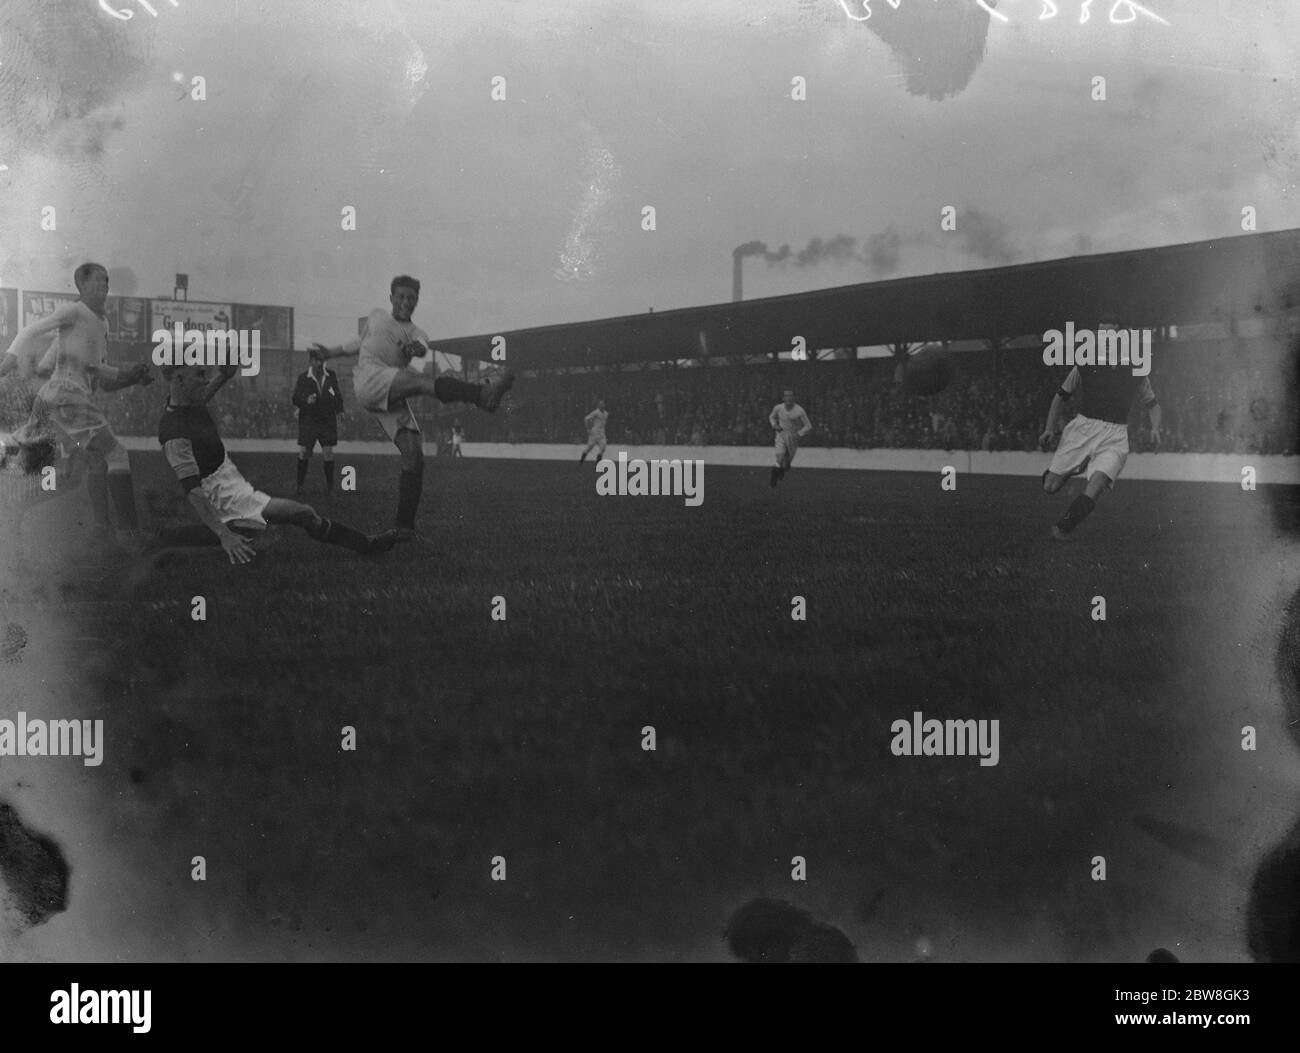 Le stelle del calcio sudamericano incontrano West Ham . Londra ha messo in scena una decisa novità calcistica all'Upton Park lunedì , quando West Ham ha giocato la squadra del Perù - Cile ora in giro per questo paese . L Fernandez , la parte posteriore sinistra del Perù - Cile XI , segnando il traguardo di apertura della partita. 16 ottobre 1933 Foto Stock